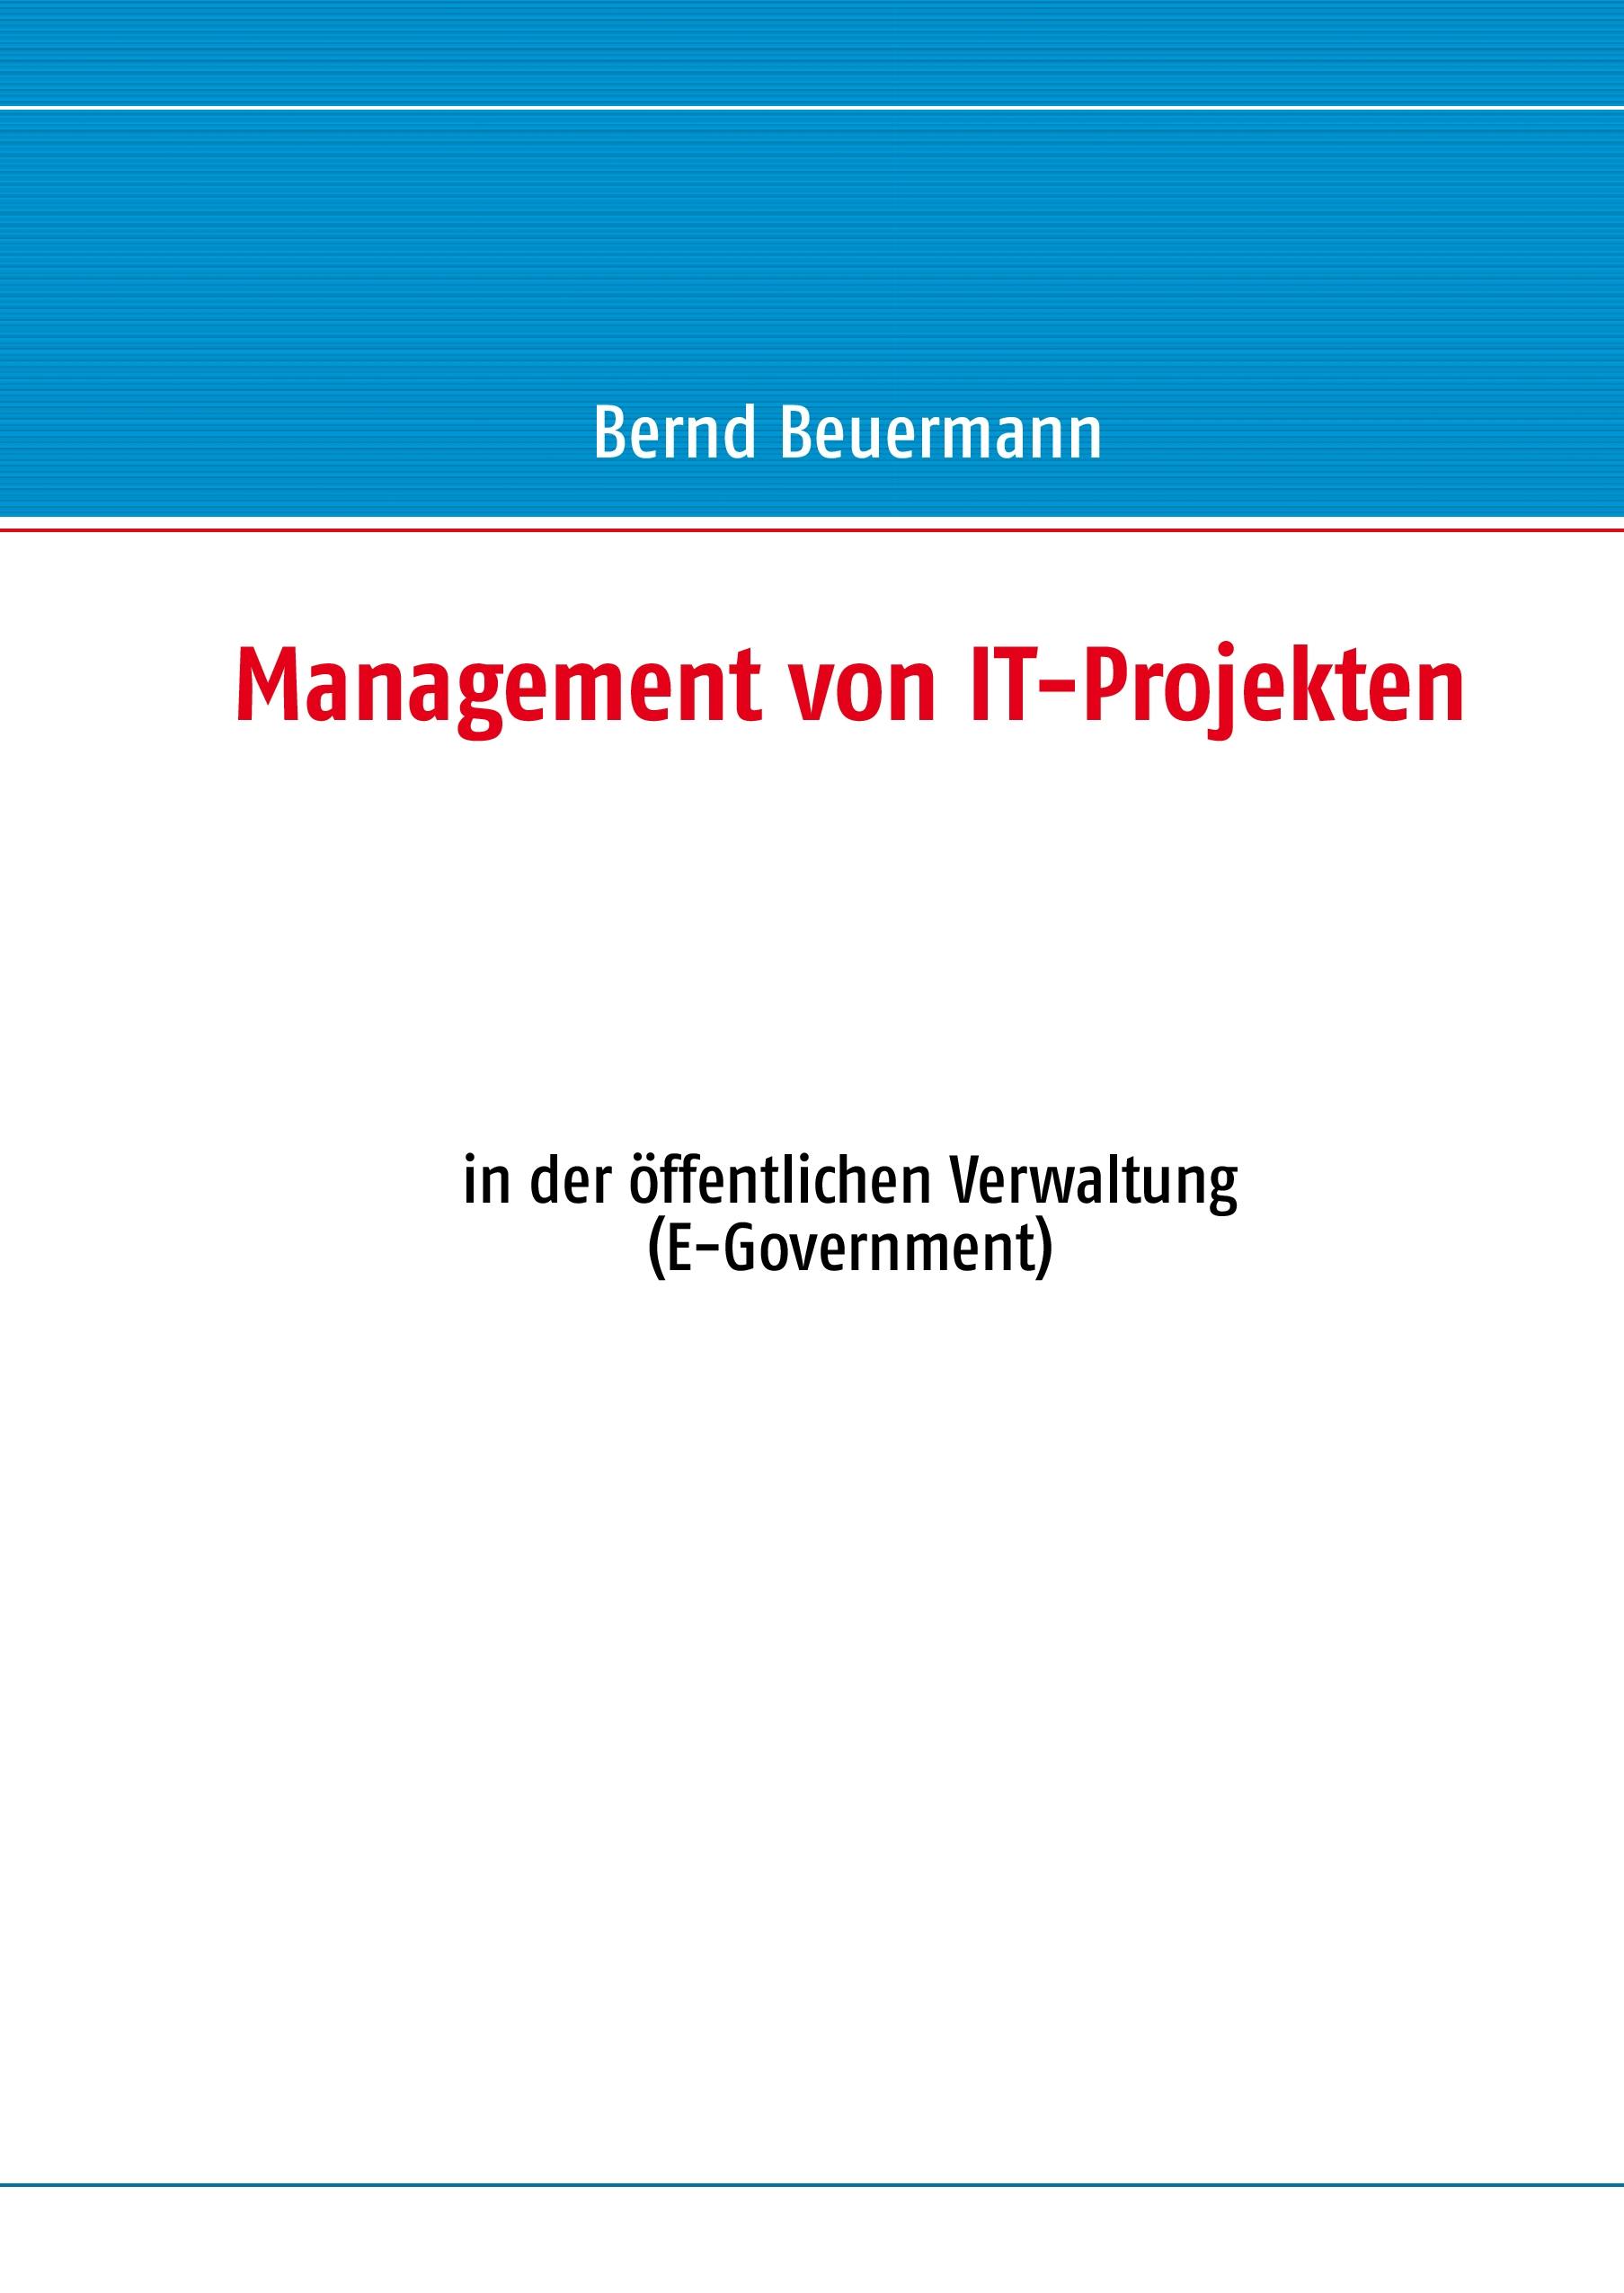 Management von IT-Projekten - Bernd Beuermann